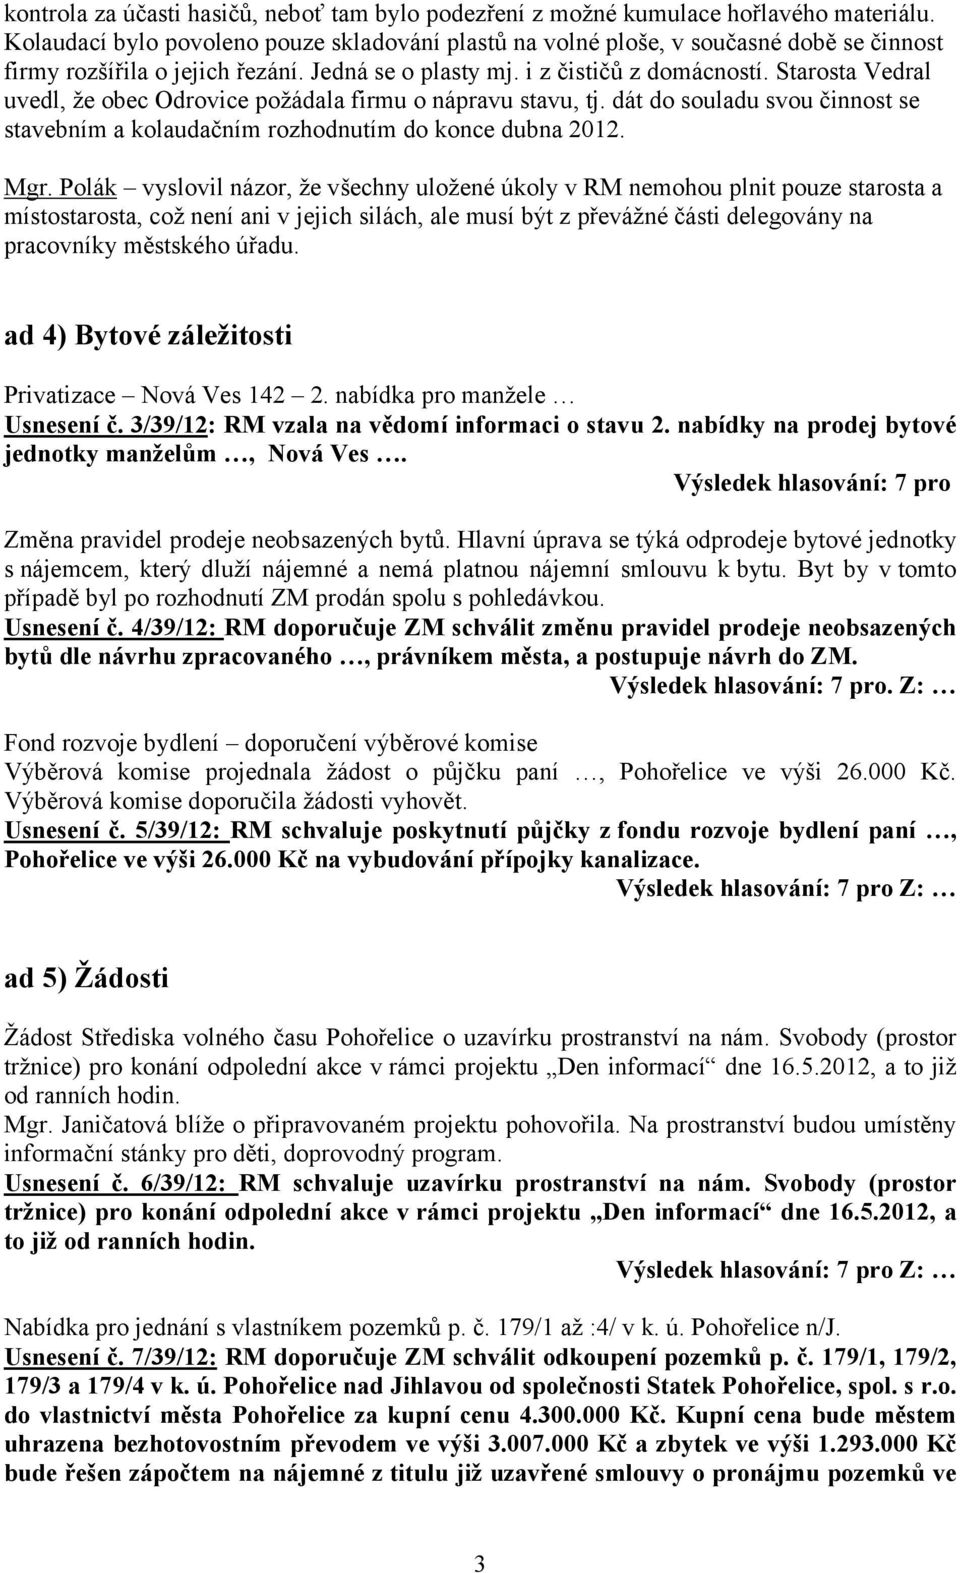 Starosta Vedral uvedl, že obec Odrovice požádala firmu o nápravu stavu, tj. dát do souladu svou činnost se stavebním a kolaudačním rozhodnutím do konce dubna 2012. Mgr.